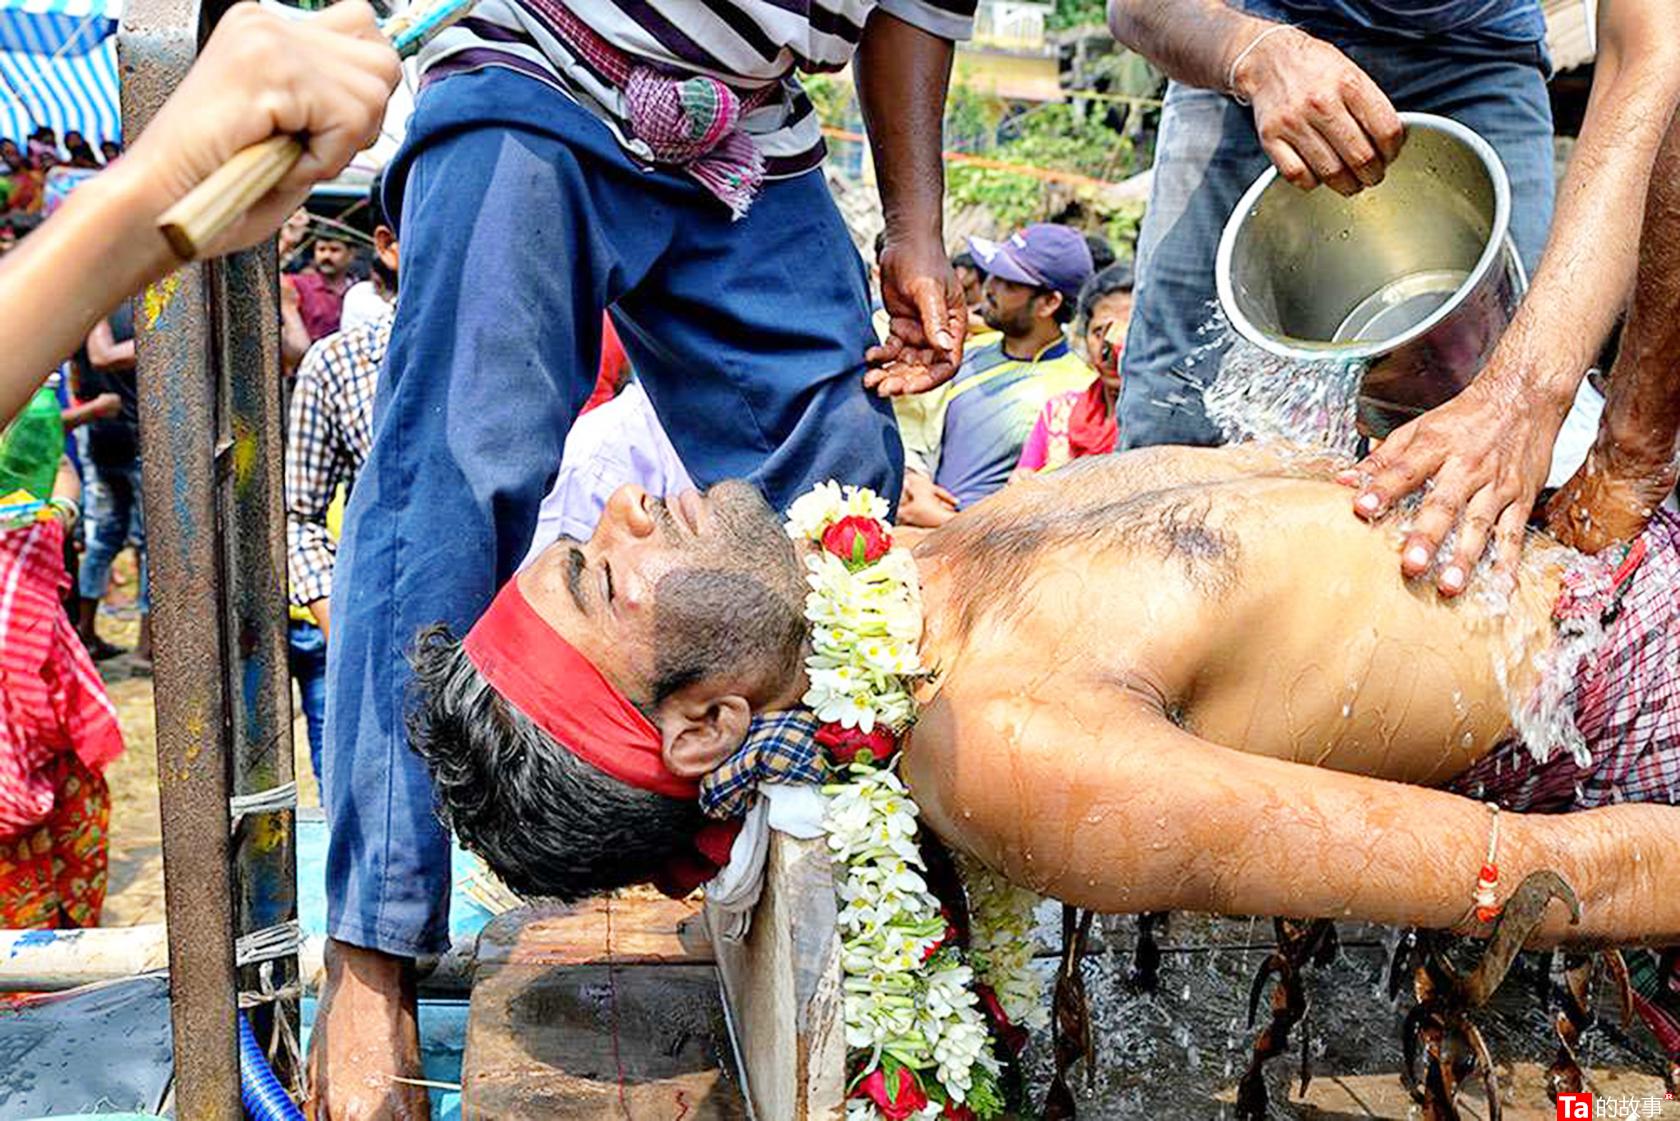 西孟加拉邦Gajan节庆祝活动的故事